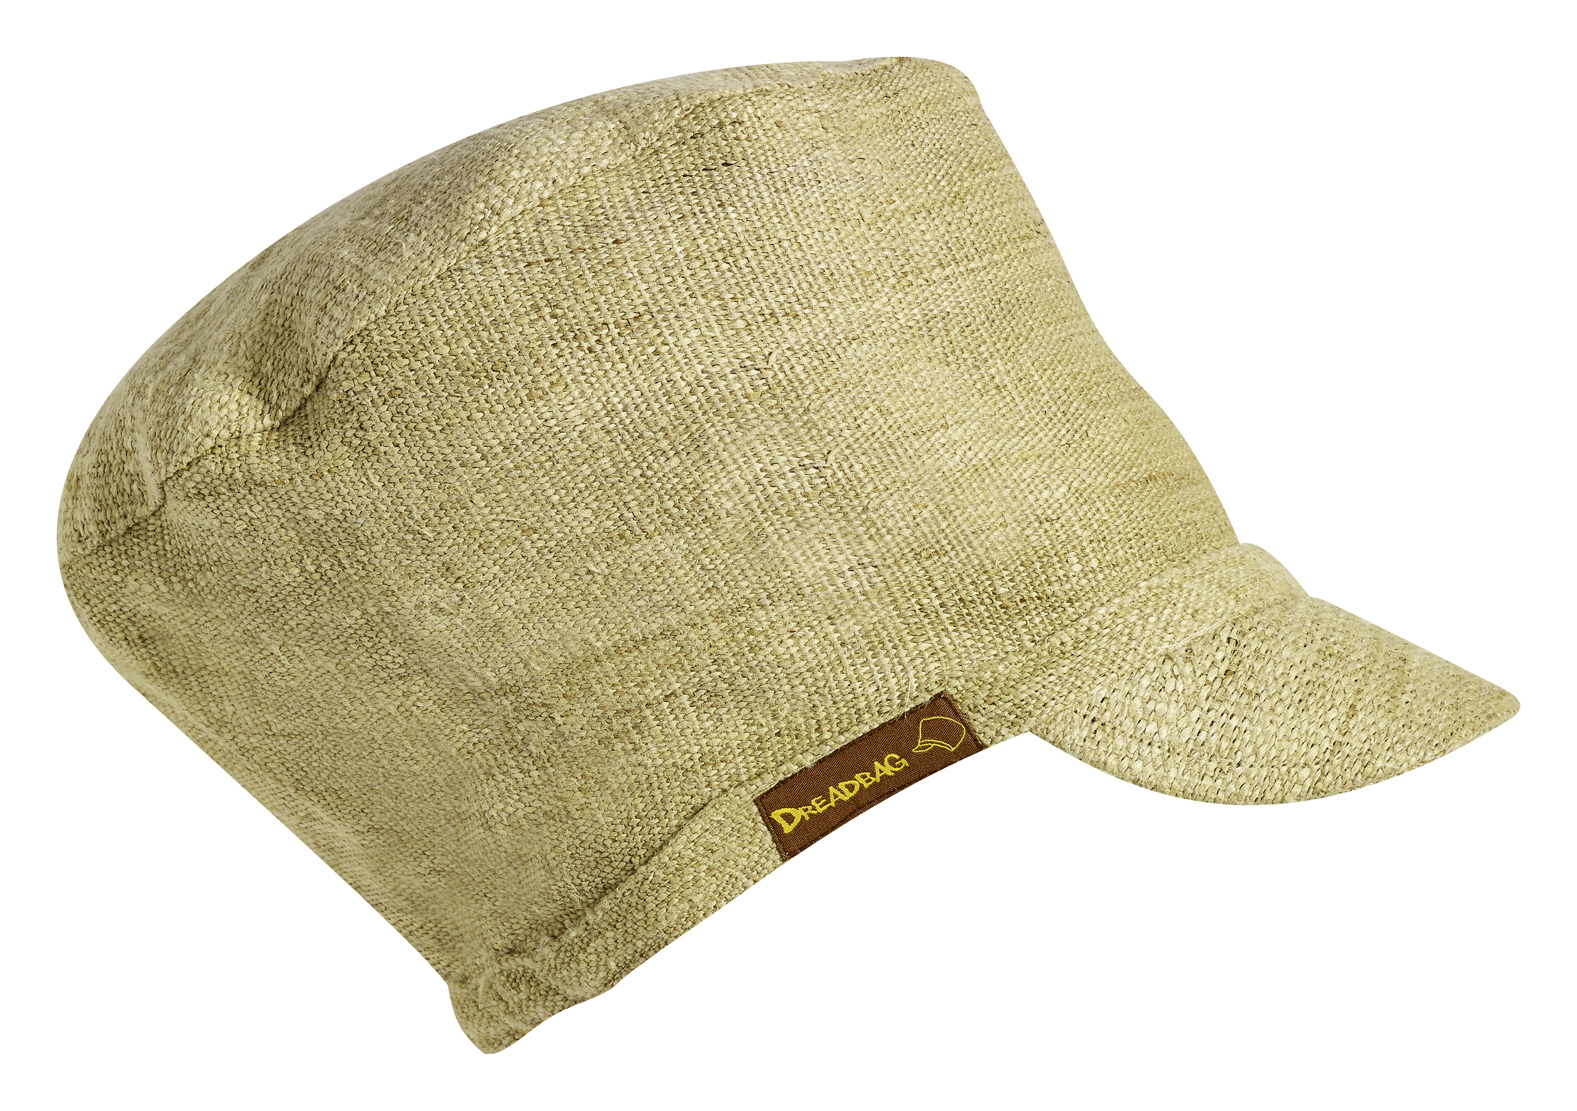 Hemp Dreadbag - The natural hemp hat